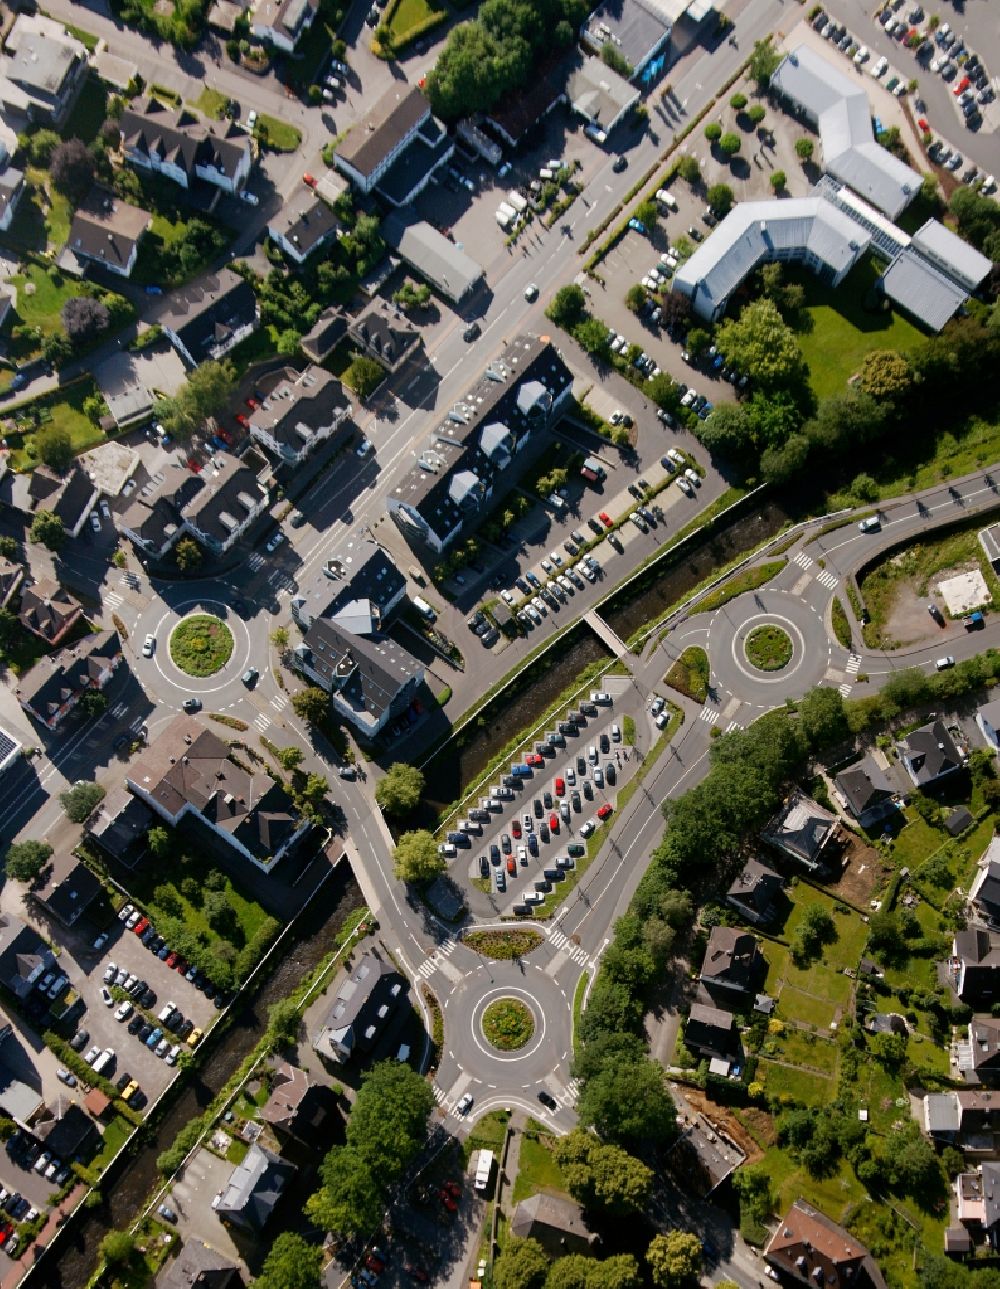 Aerial image Olpe - Downtown area on the banks Bigge - Bruchstrasse in Olpe in North Rhine-Westphalia